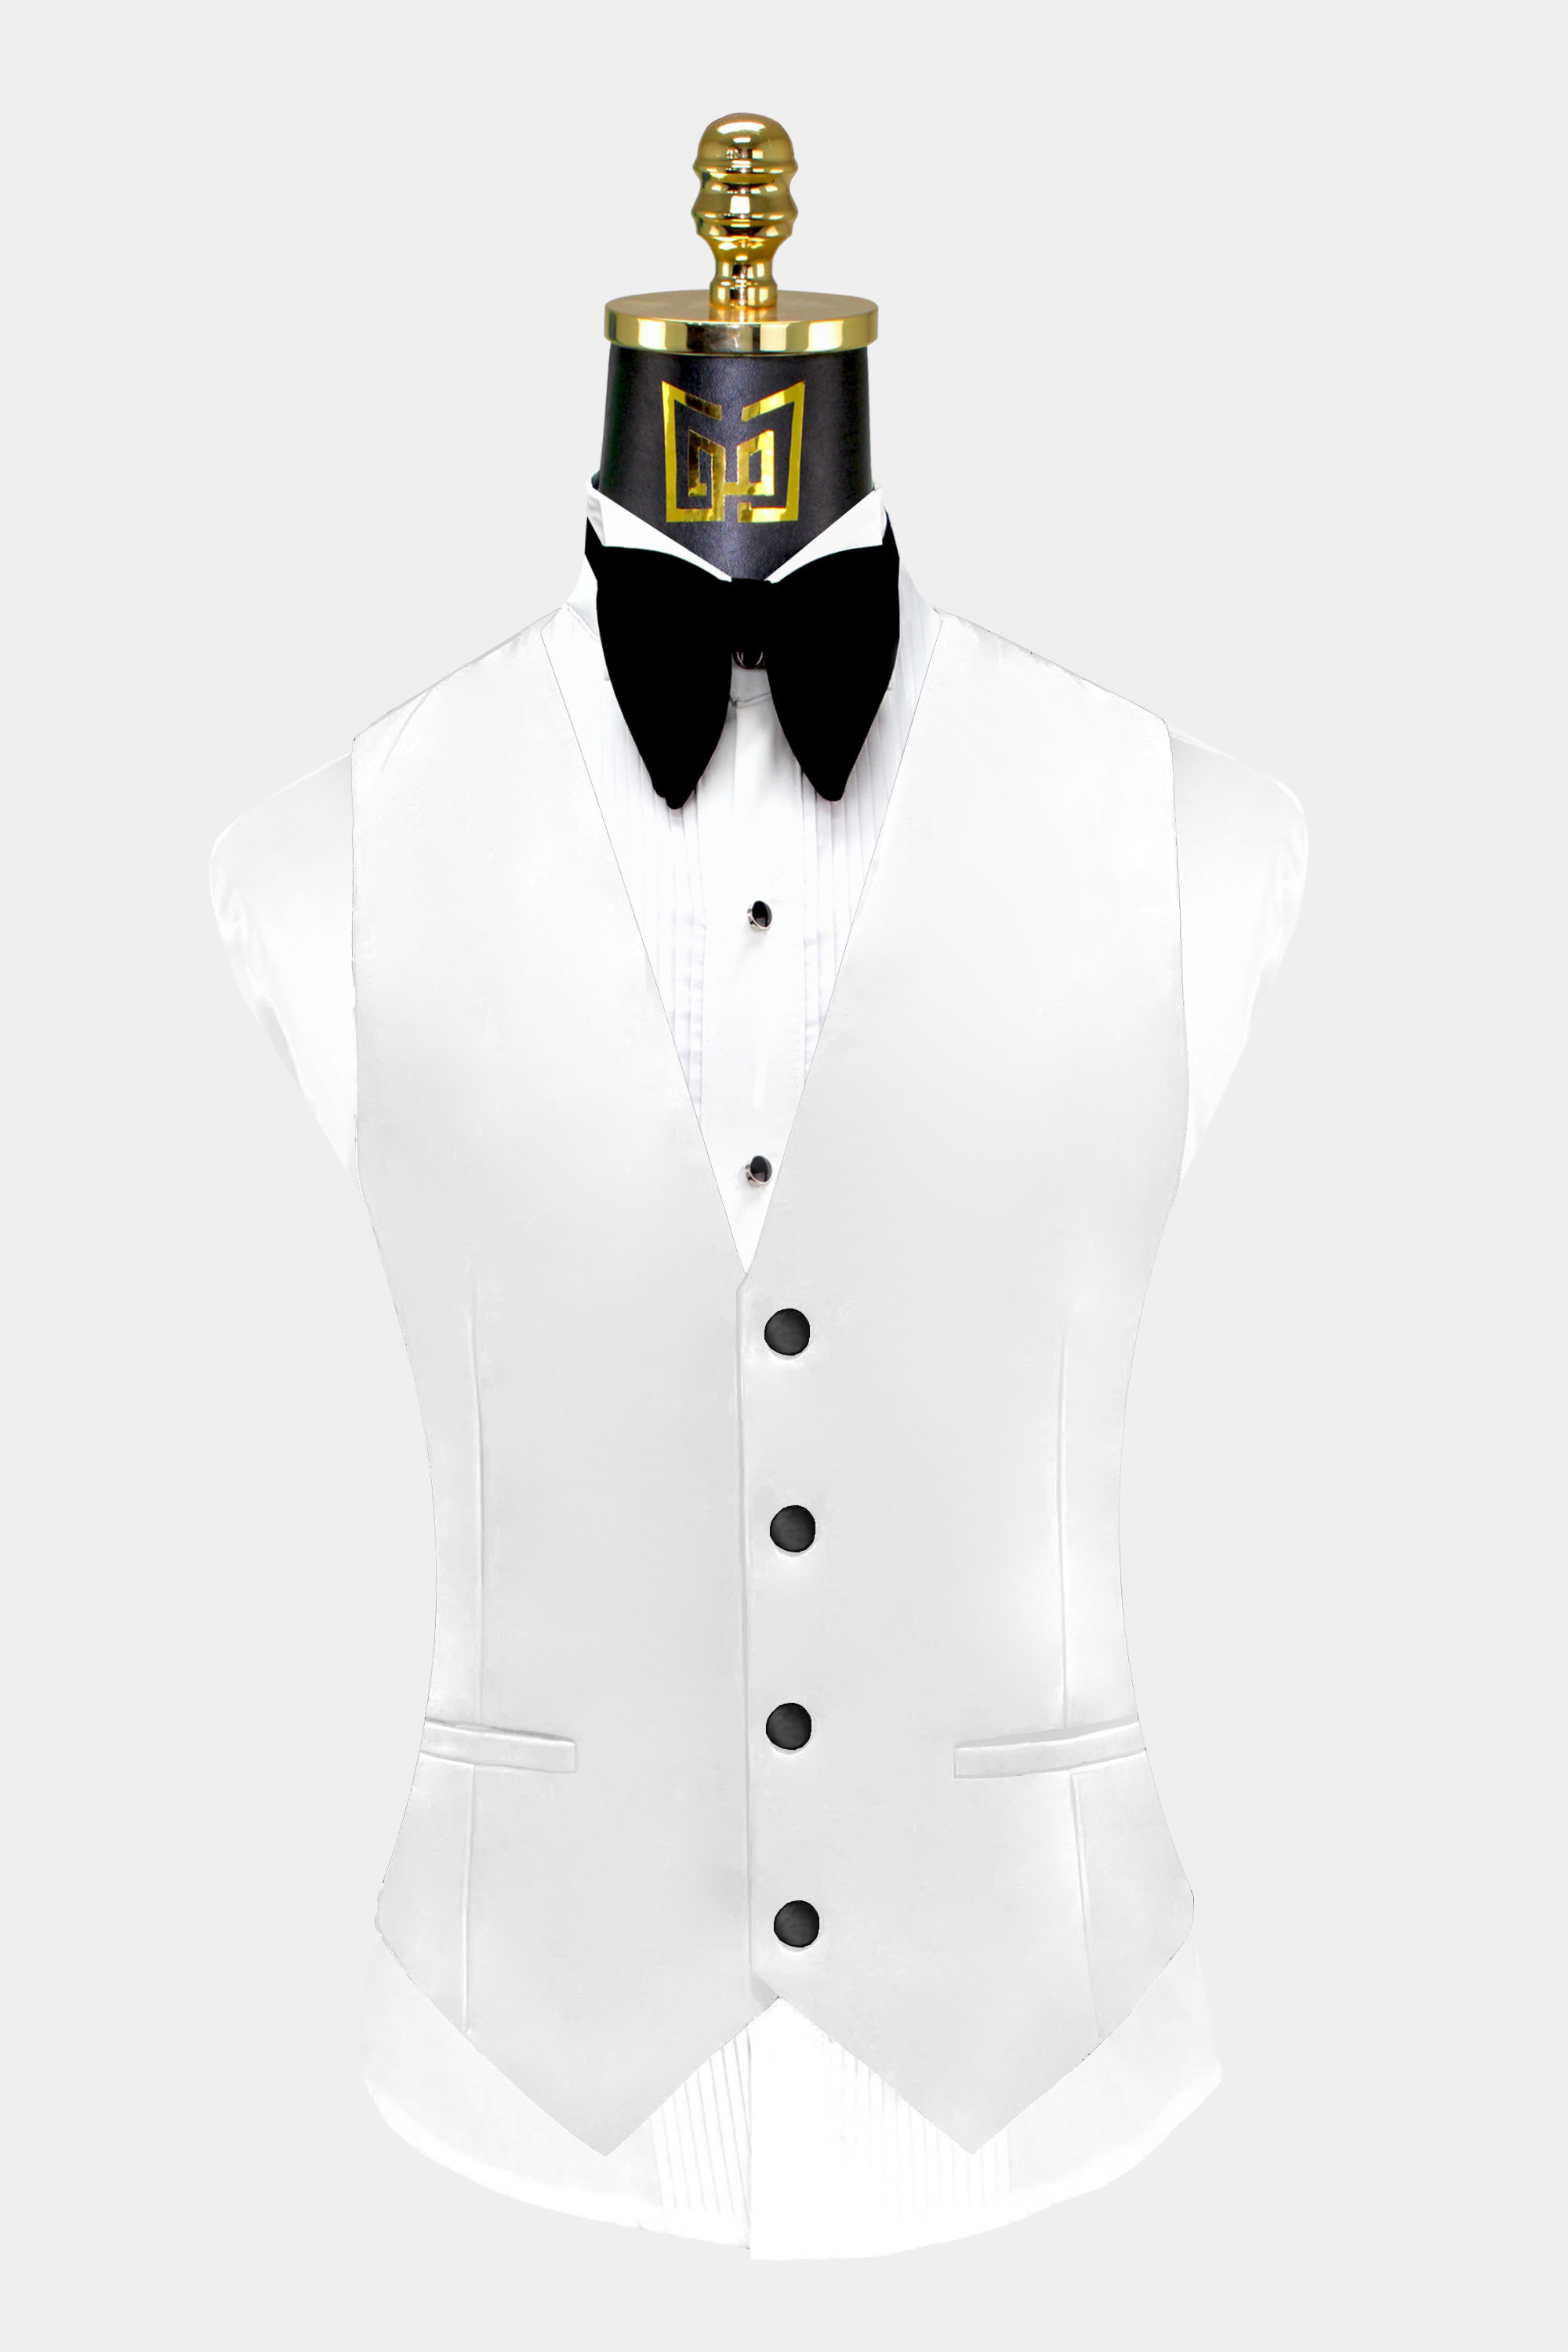 Mens-White-Tuxedo-Vest-Groom-Wedding-Suit-Waistcoat-from-Gentlemansguru.com